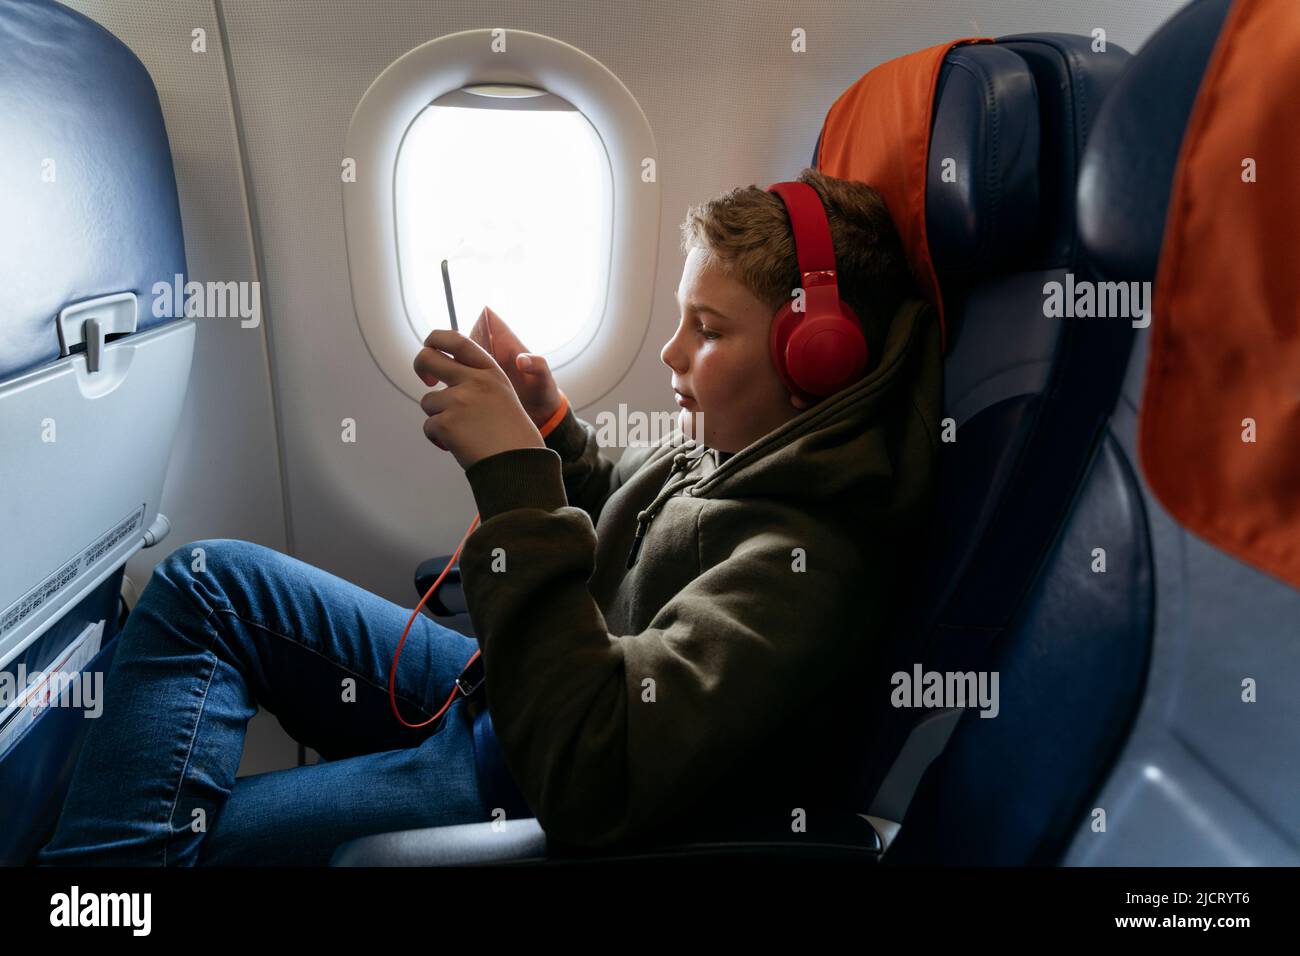 Un garçon vole dans un avion avec un casque et joue sur une tablette. Banque D'Images